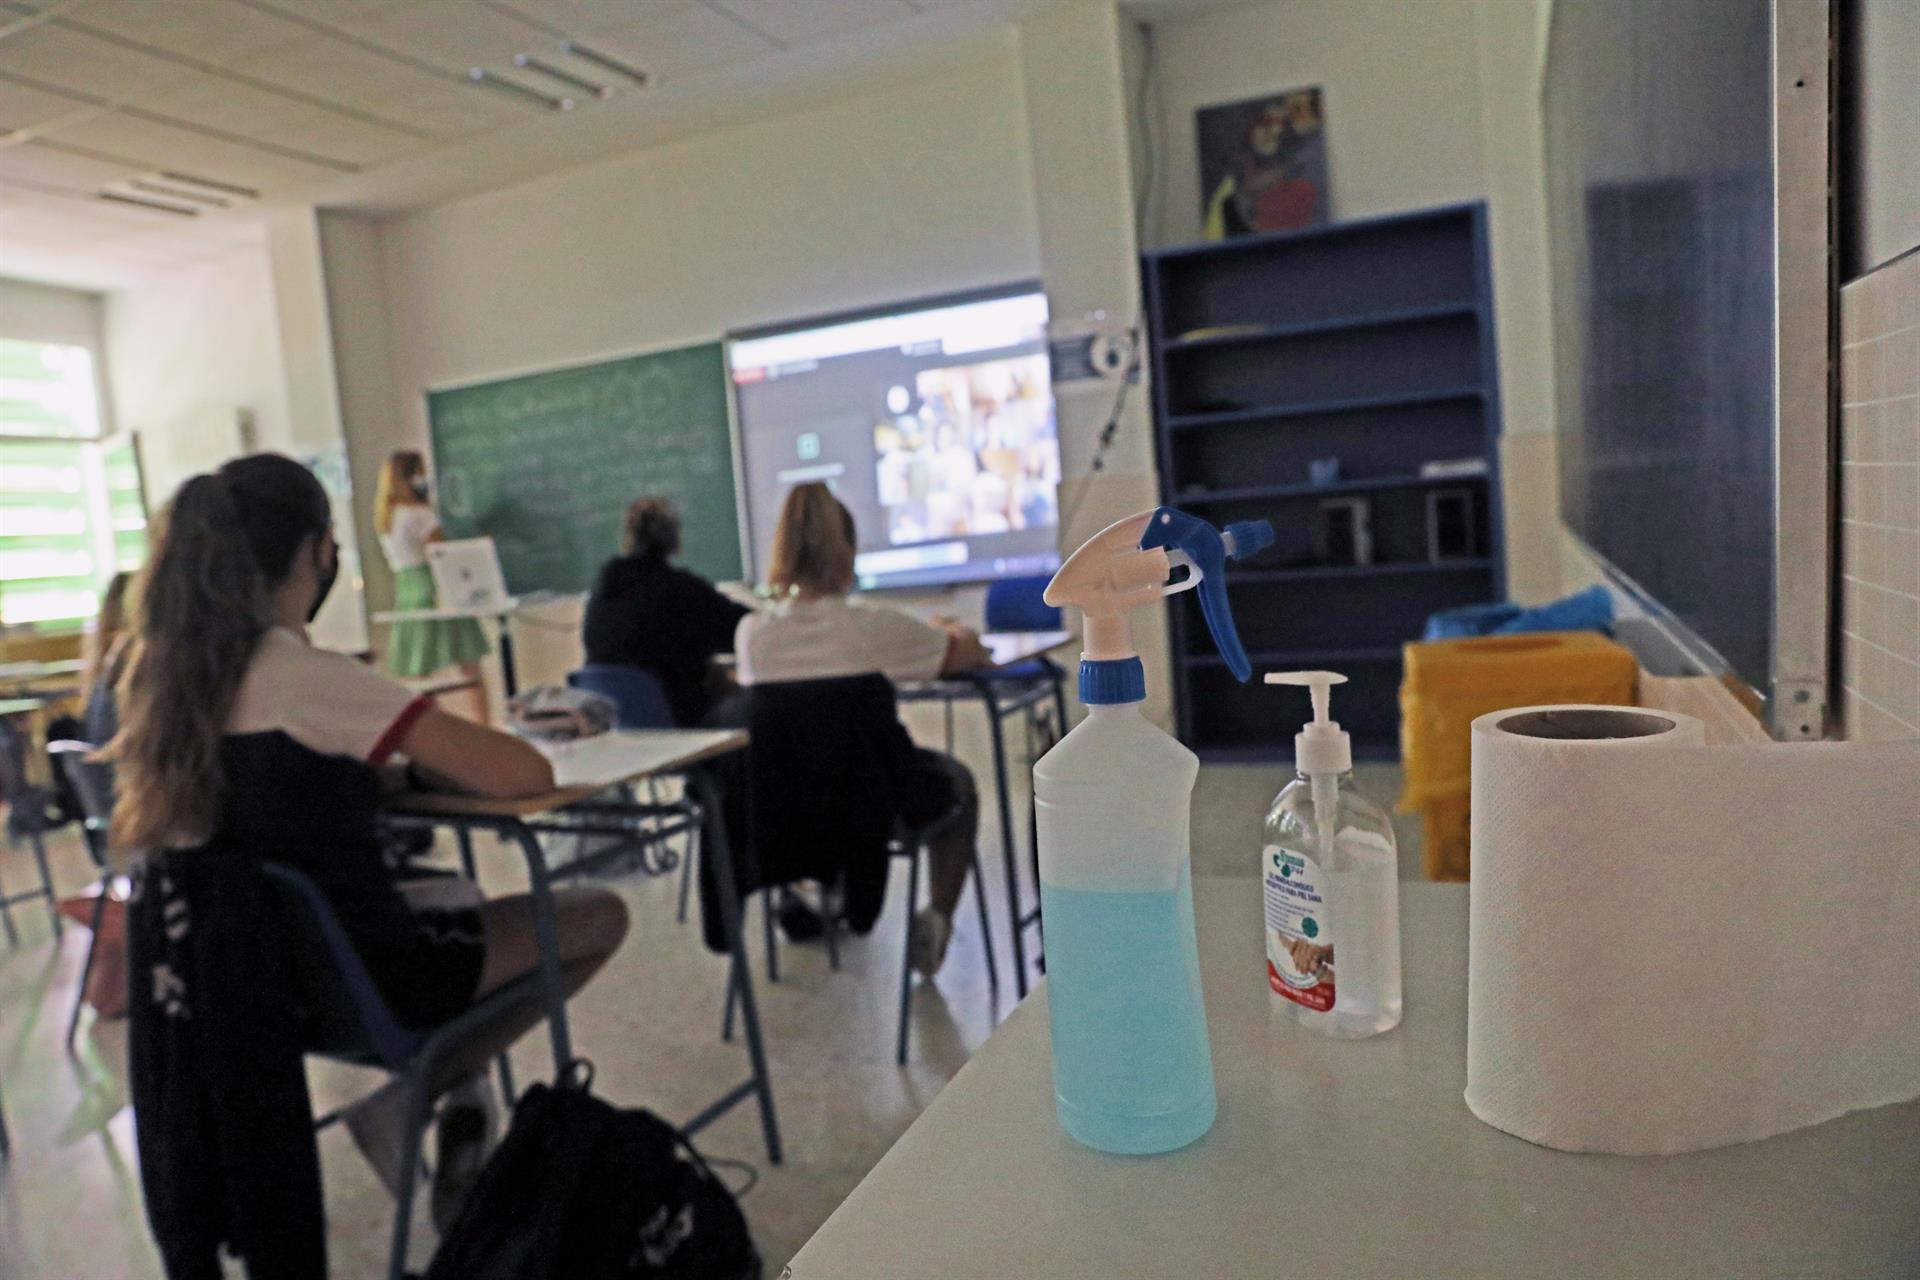 Aula de un colegio de la Comunidad de Madrid en tiempos de pandemia